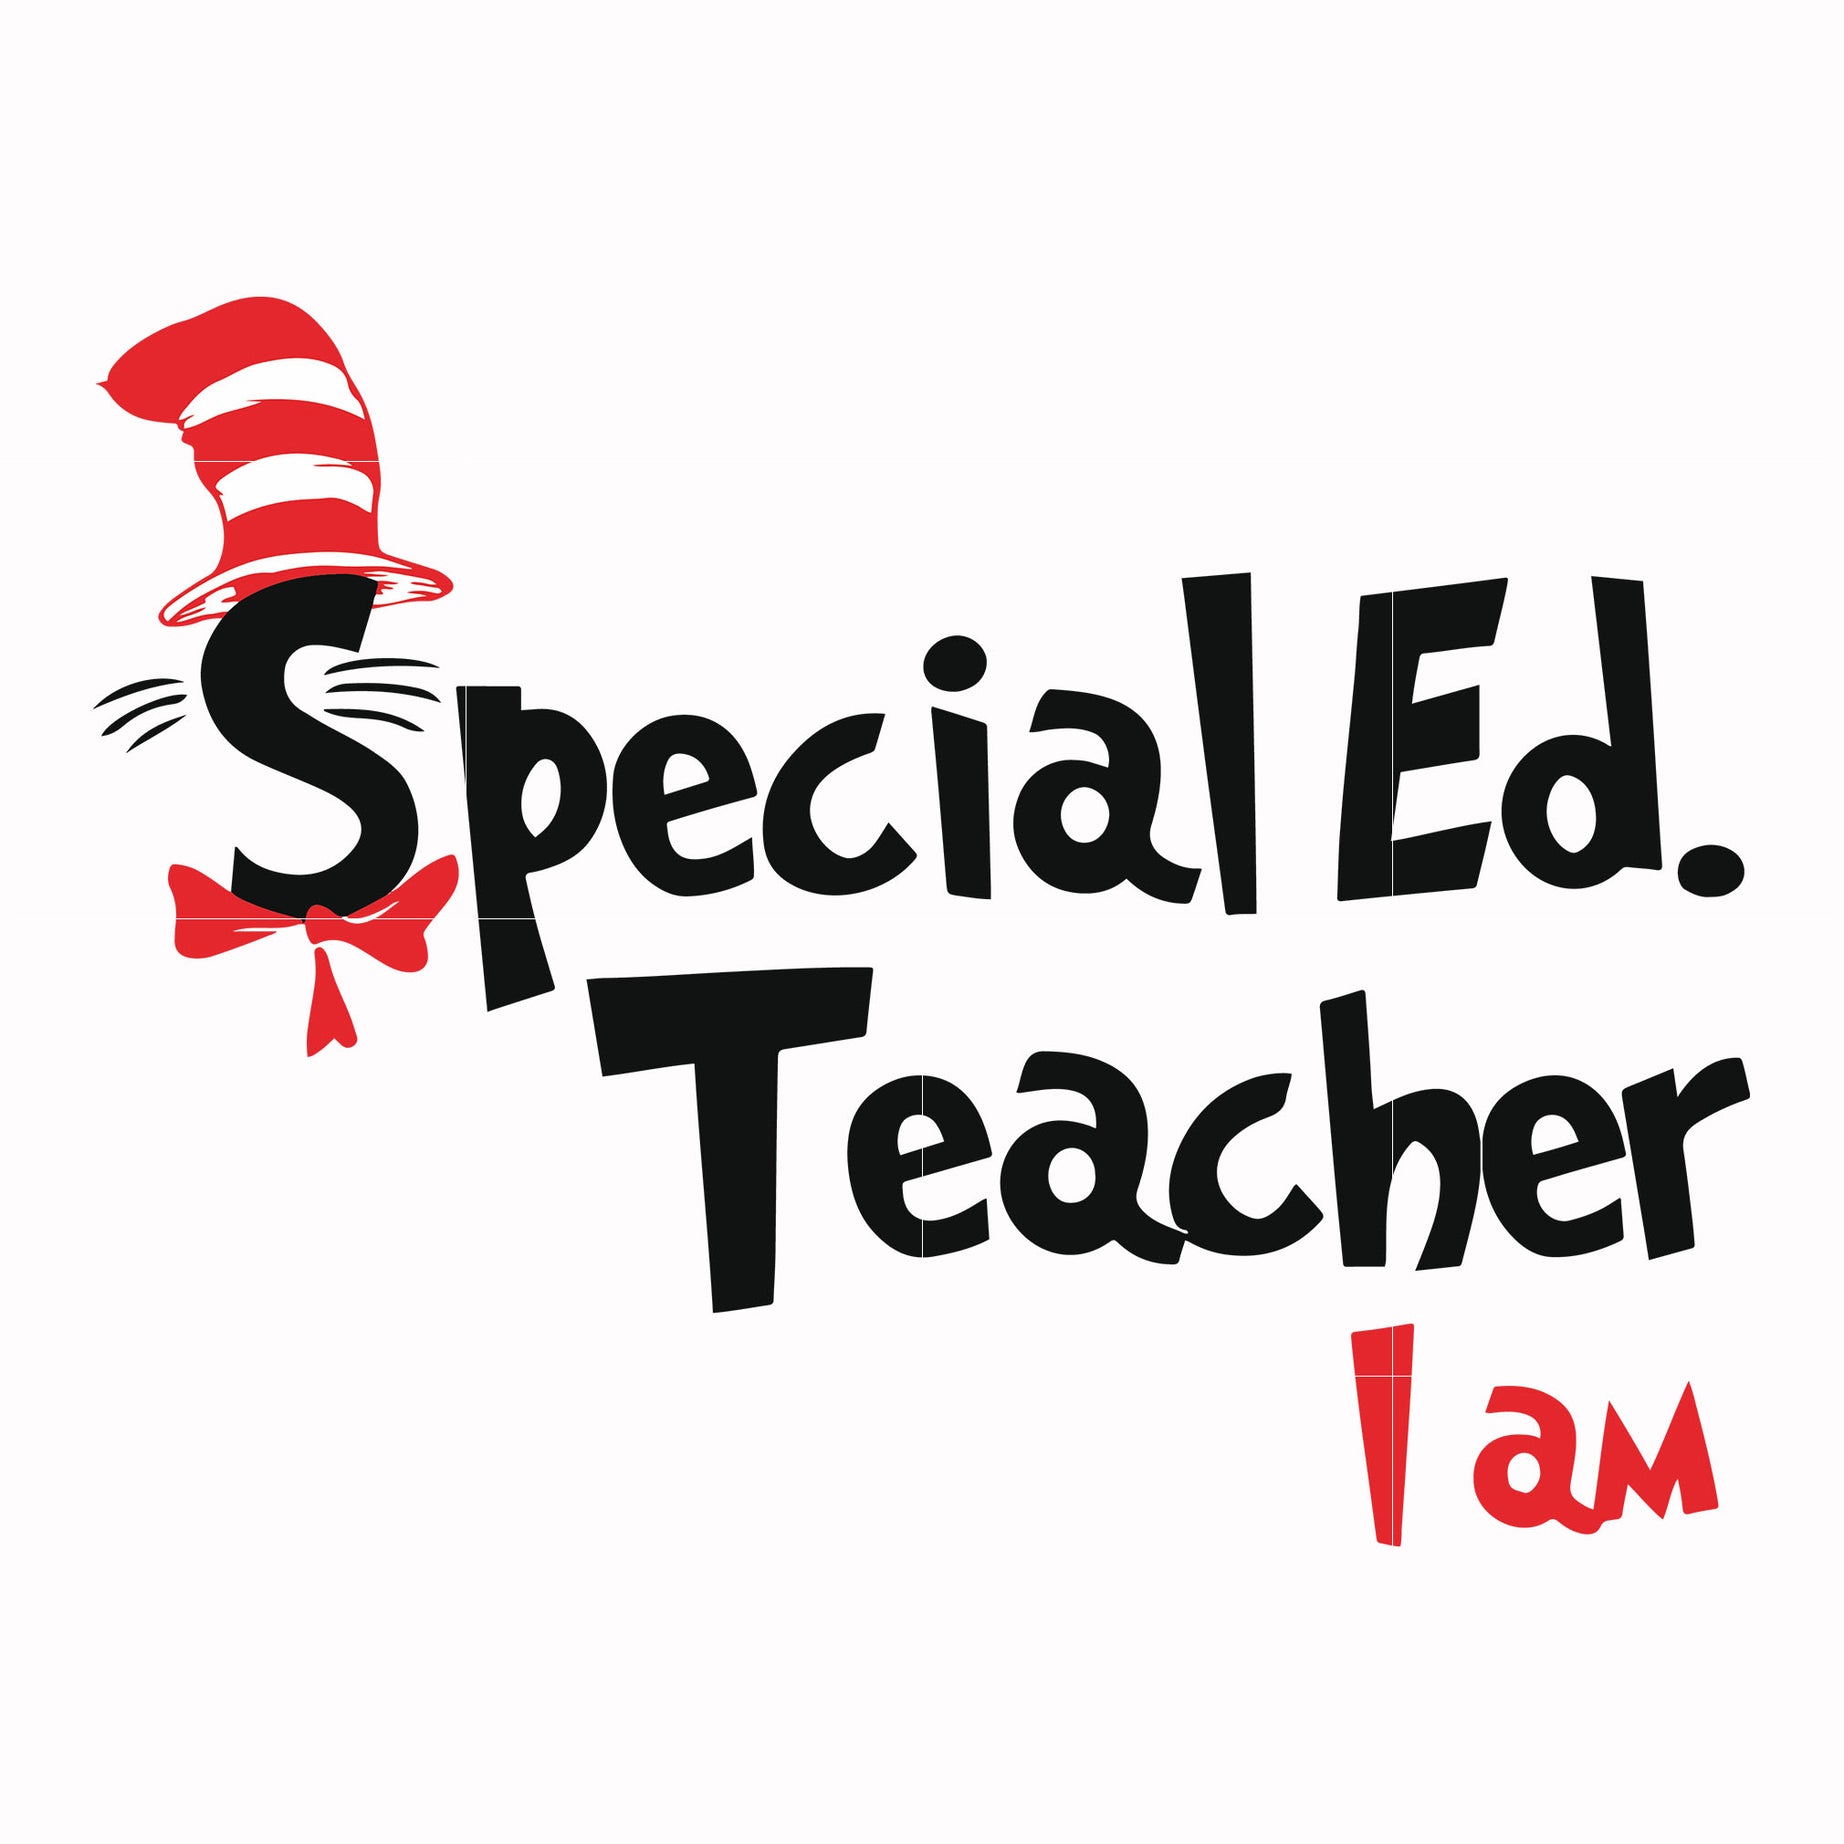 Special Ed teacher I am svg, png, dxf, eps file DR00062